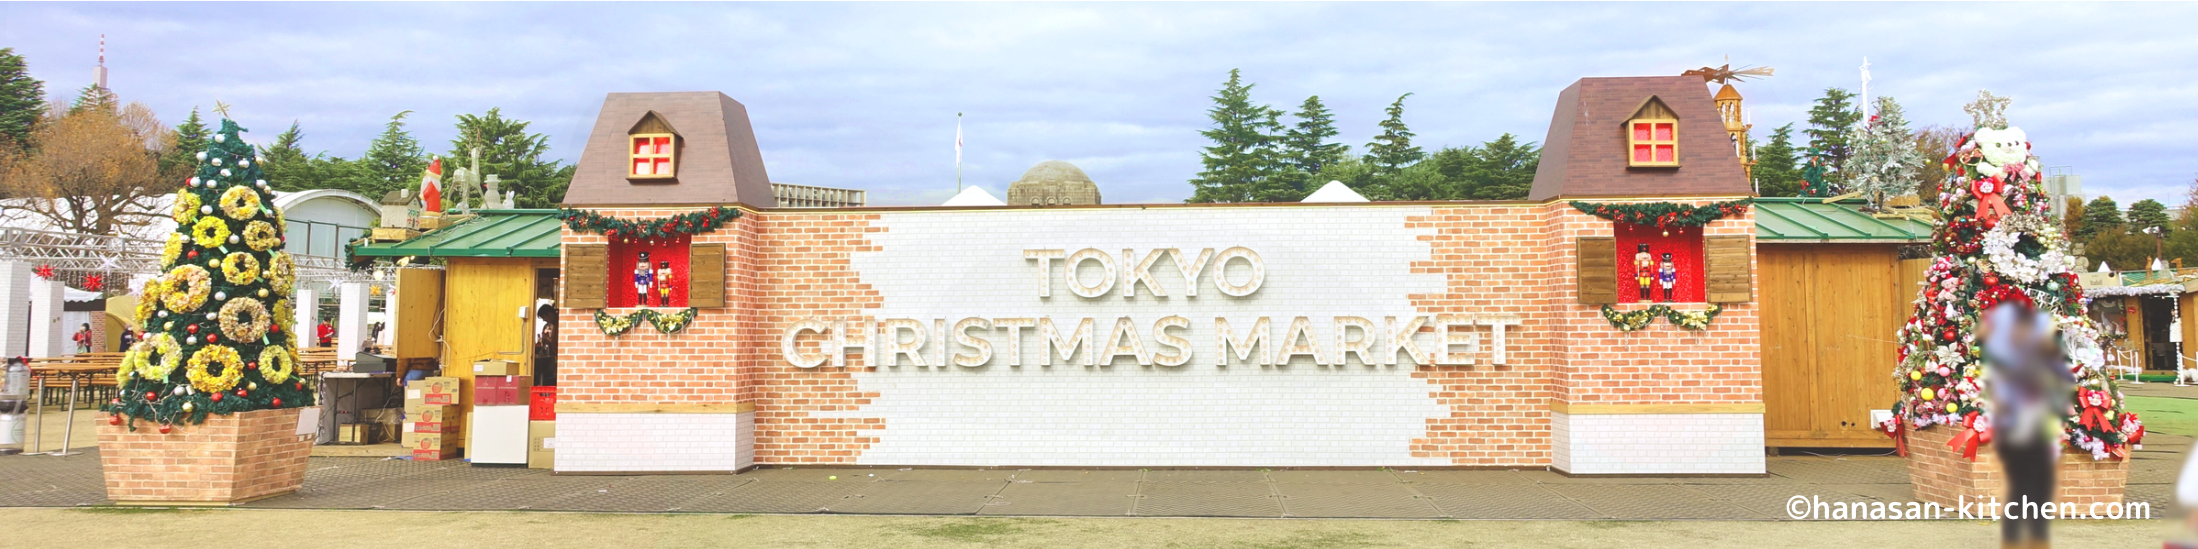 東京クリスマスマーケットメインビジュアル